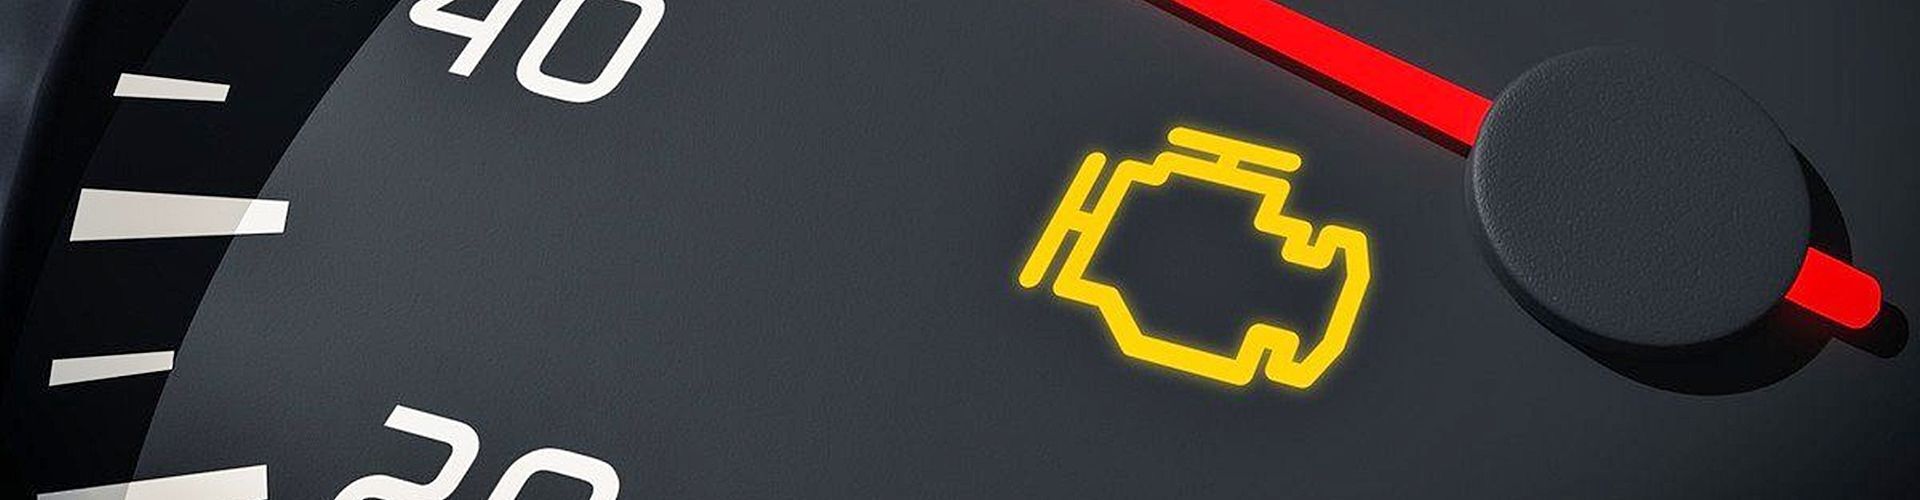 ¿Por qué se enciende la luz del aceite del coche si tiene aceite?